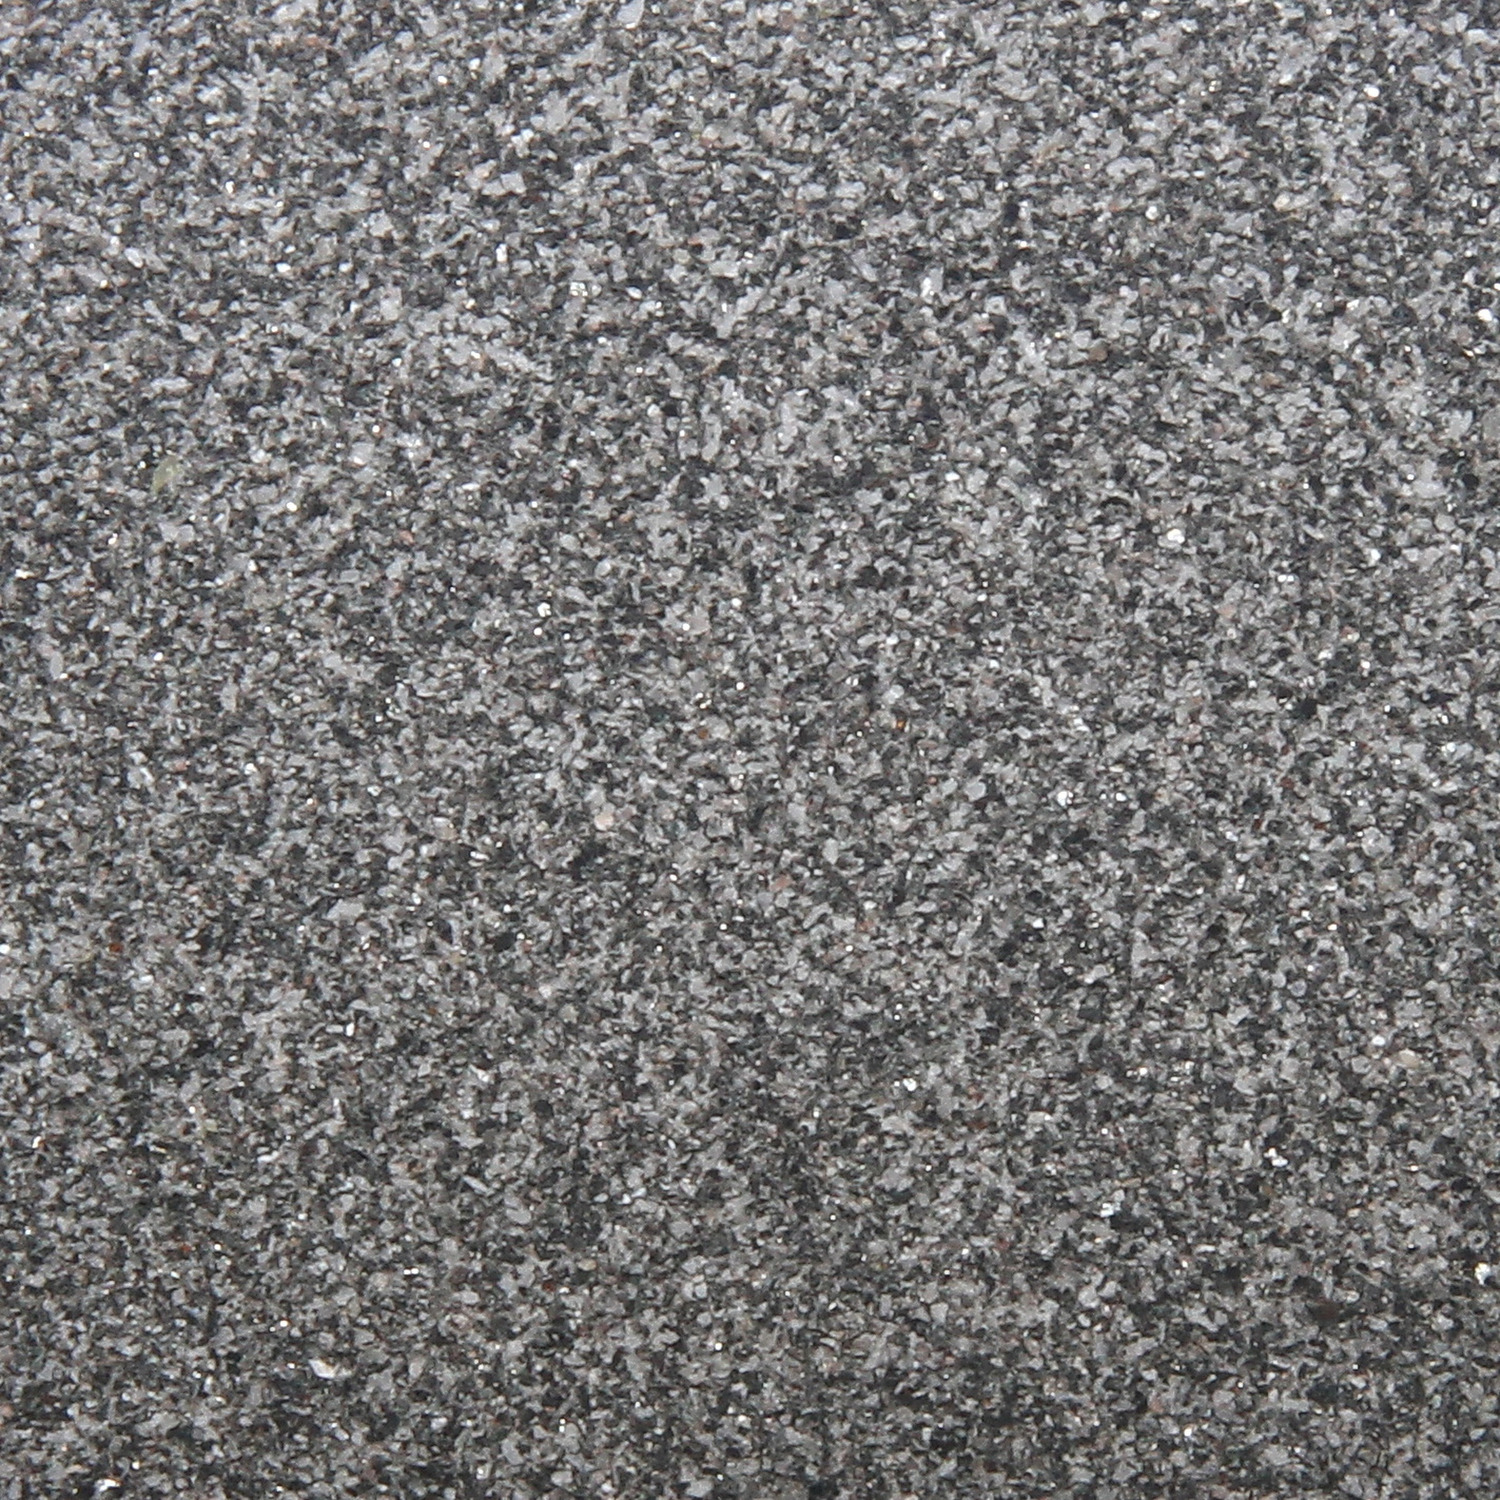 JBL Sansibar Substrat negru - zoom